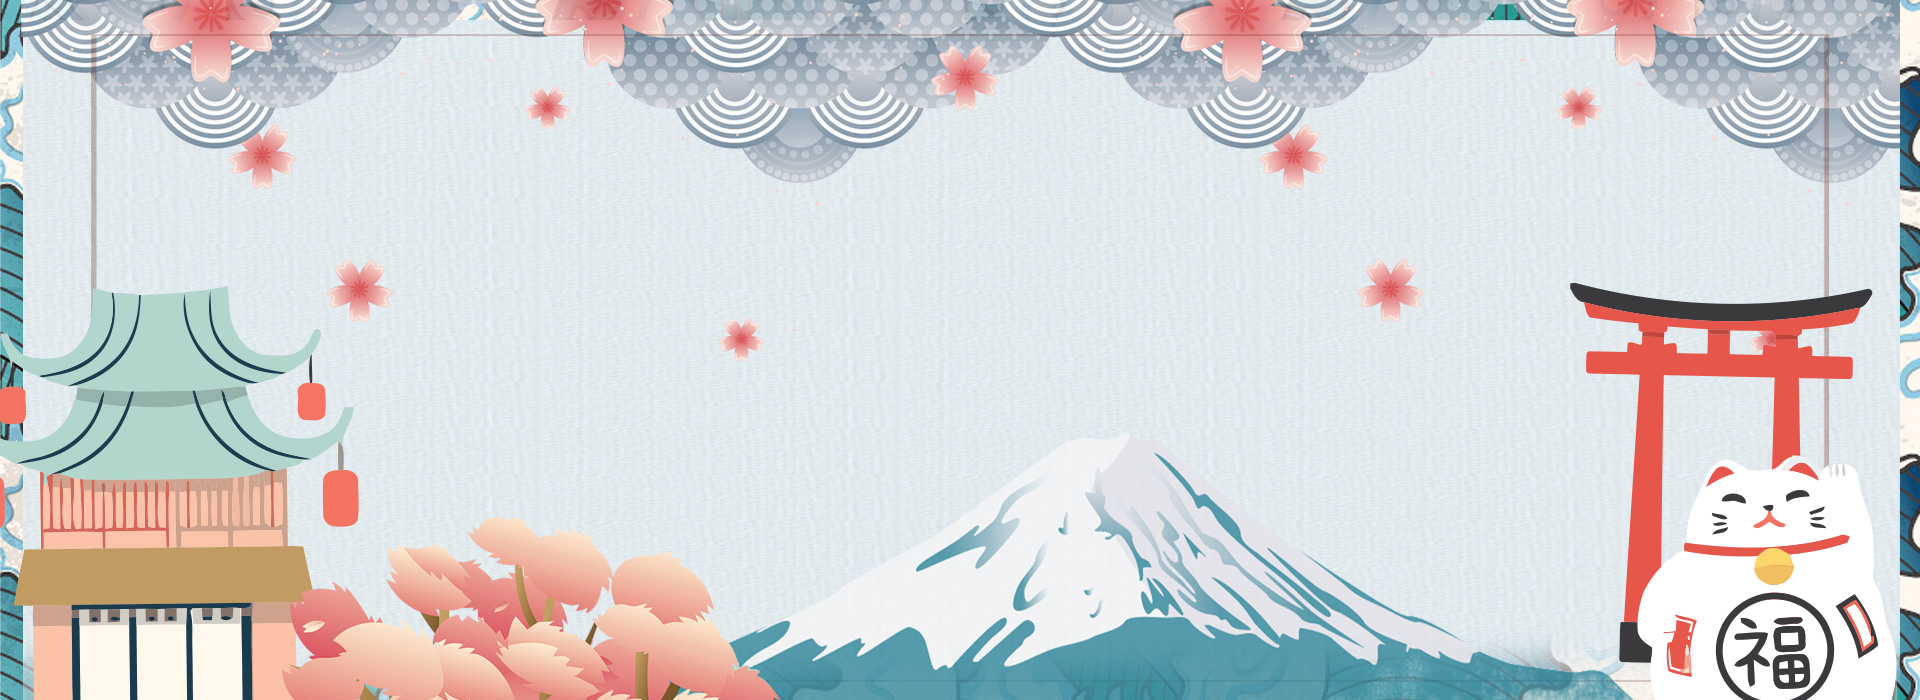 Background Nhật Bản đẹp cho thiết kế